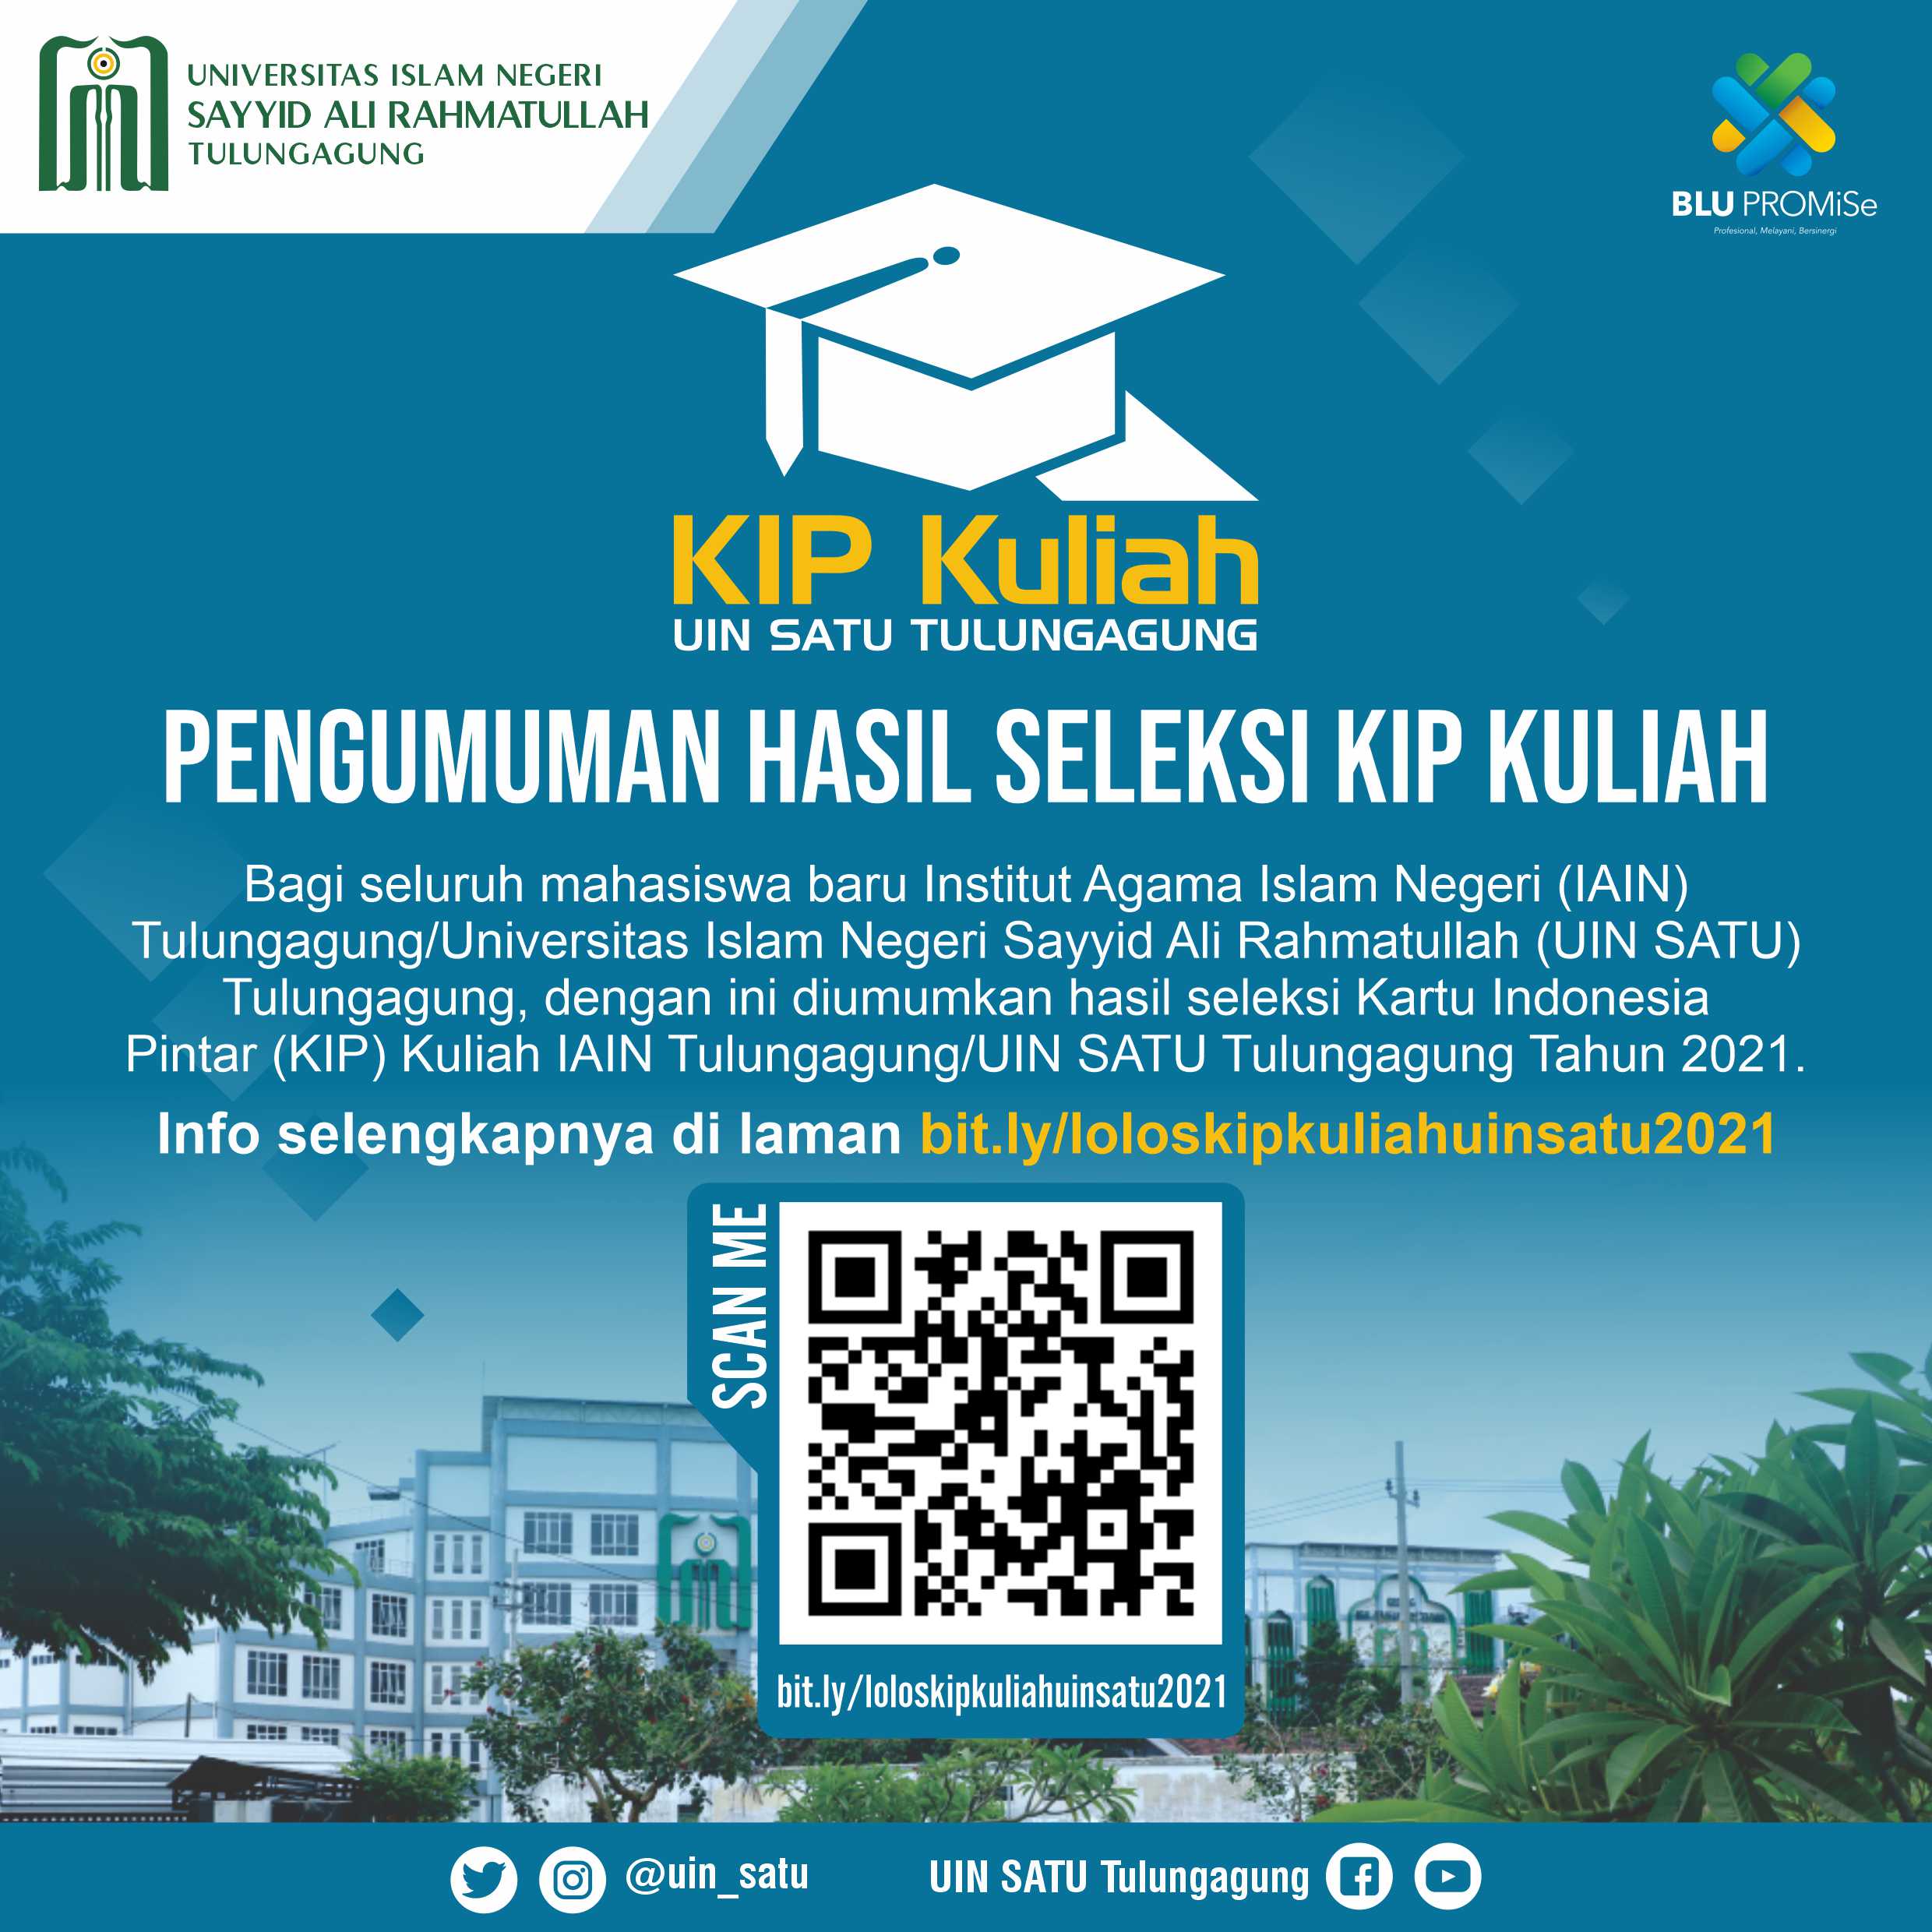 Pengumuman Hasil Seleksi Beasiswa Kartu Indonesia Pintar (KIP) Kuliah IAIN Tulungagung/UIN SATU Tulungagung Tahun 2021